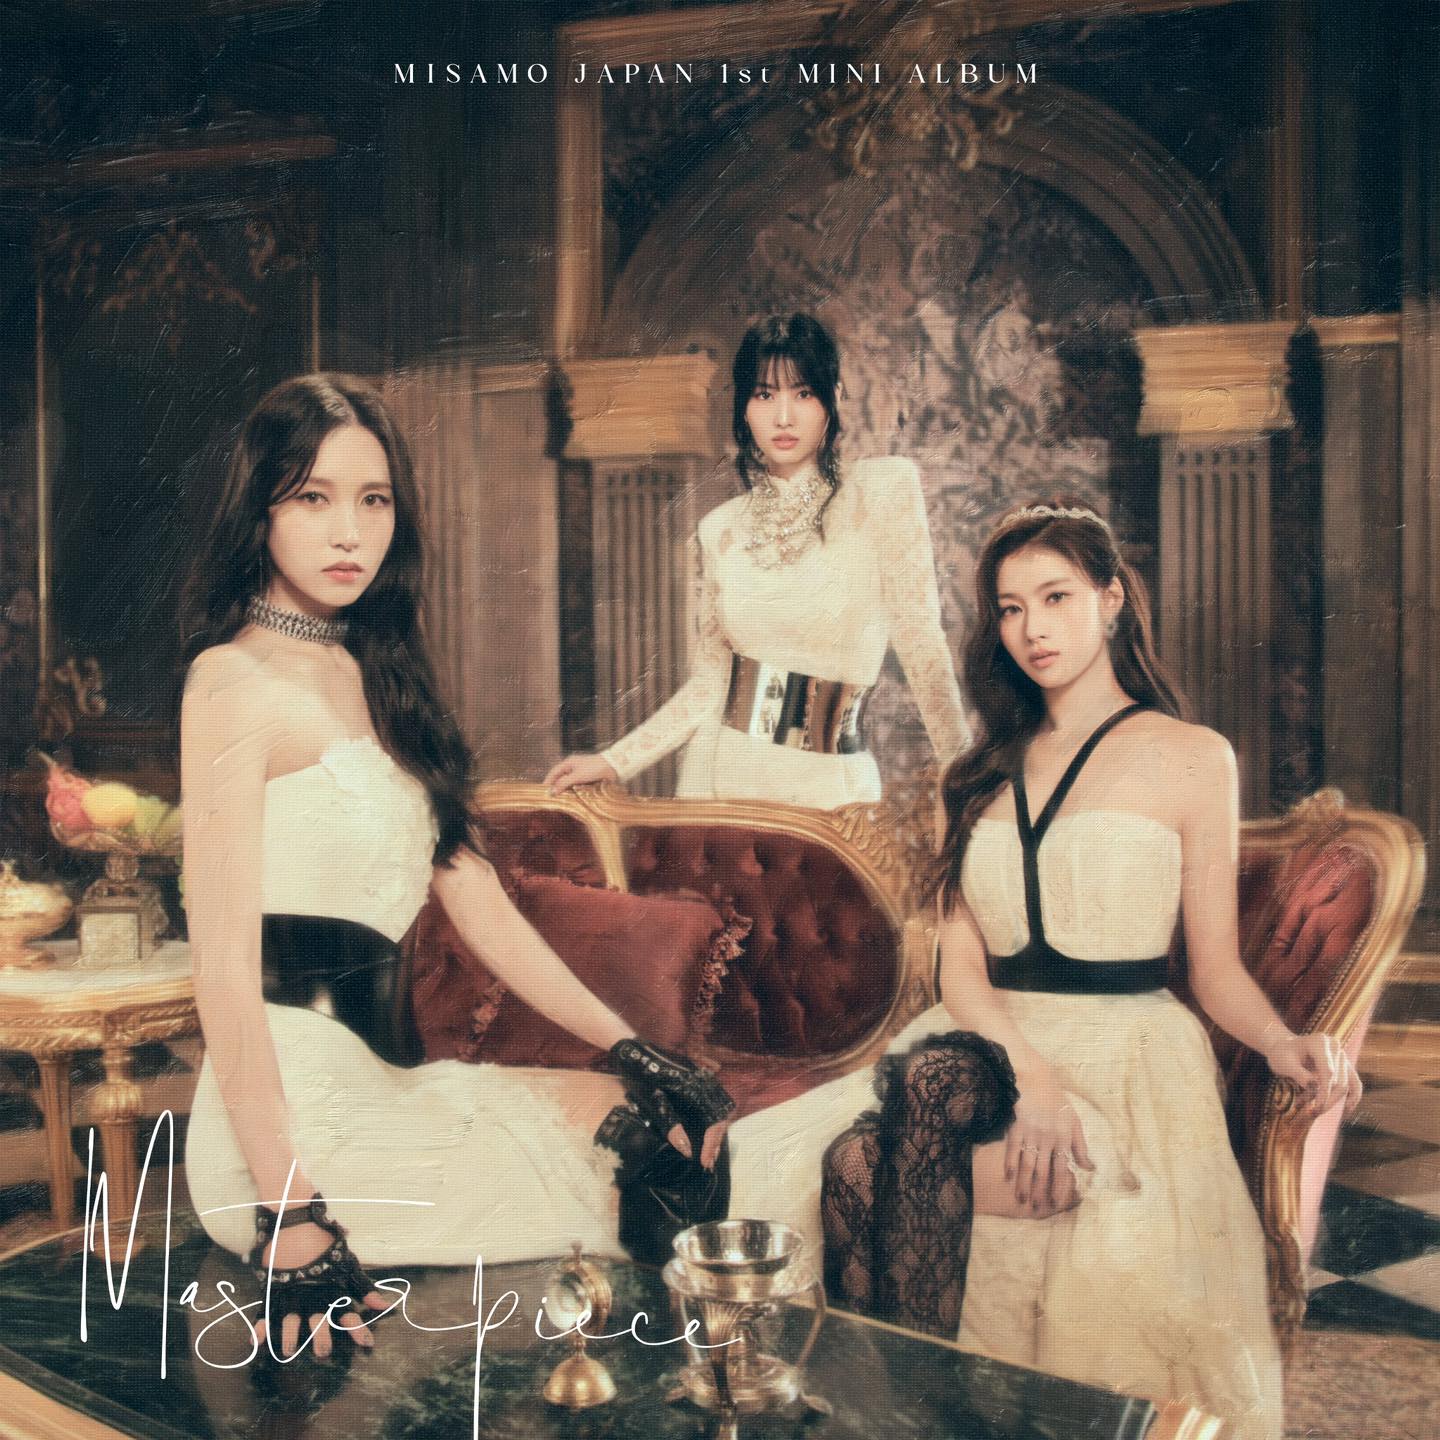 最新エルメス MISAMO Mina JAPAN限定盤 ONCE Masterpiece ミナ 邦楽 